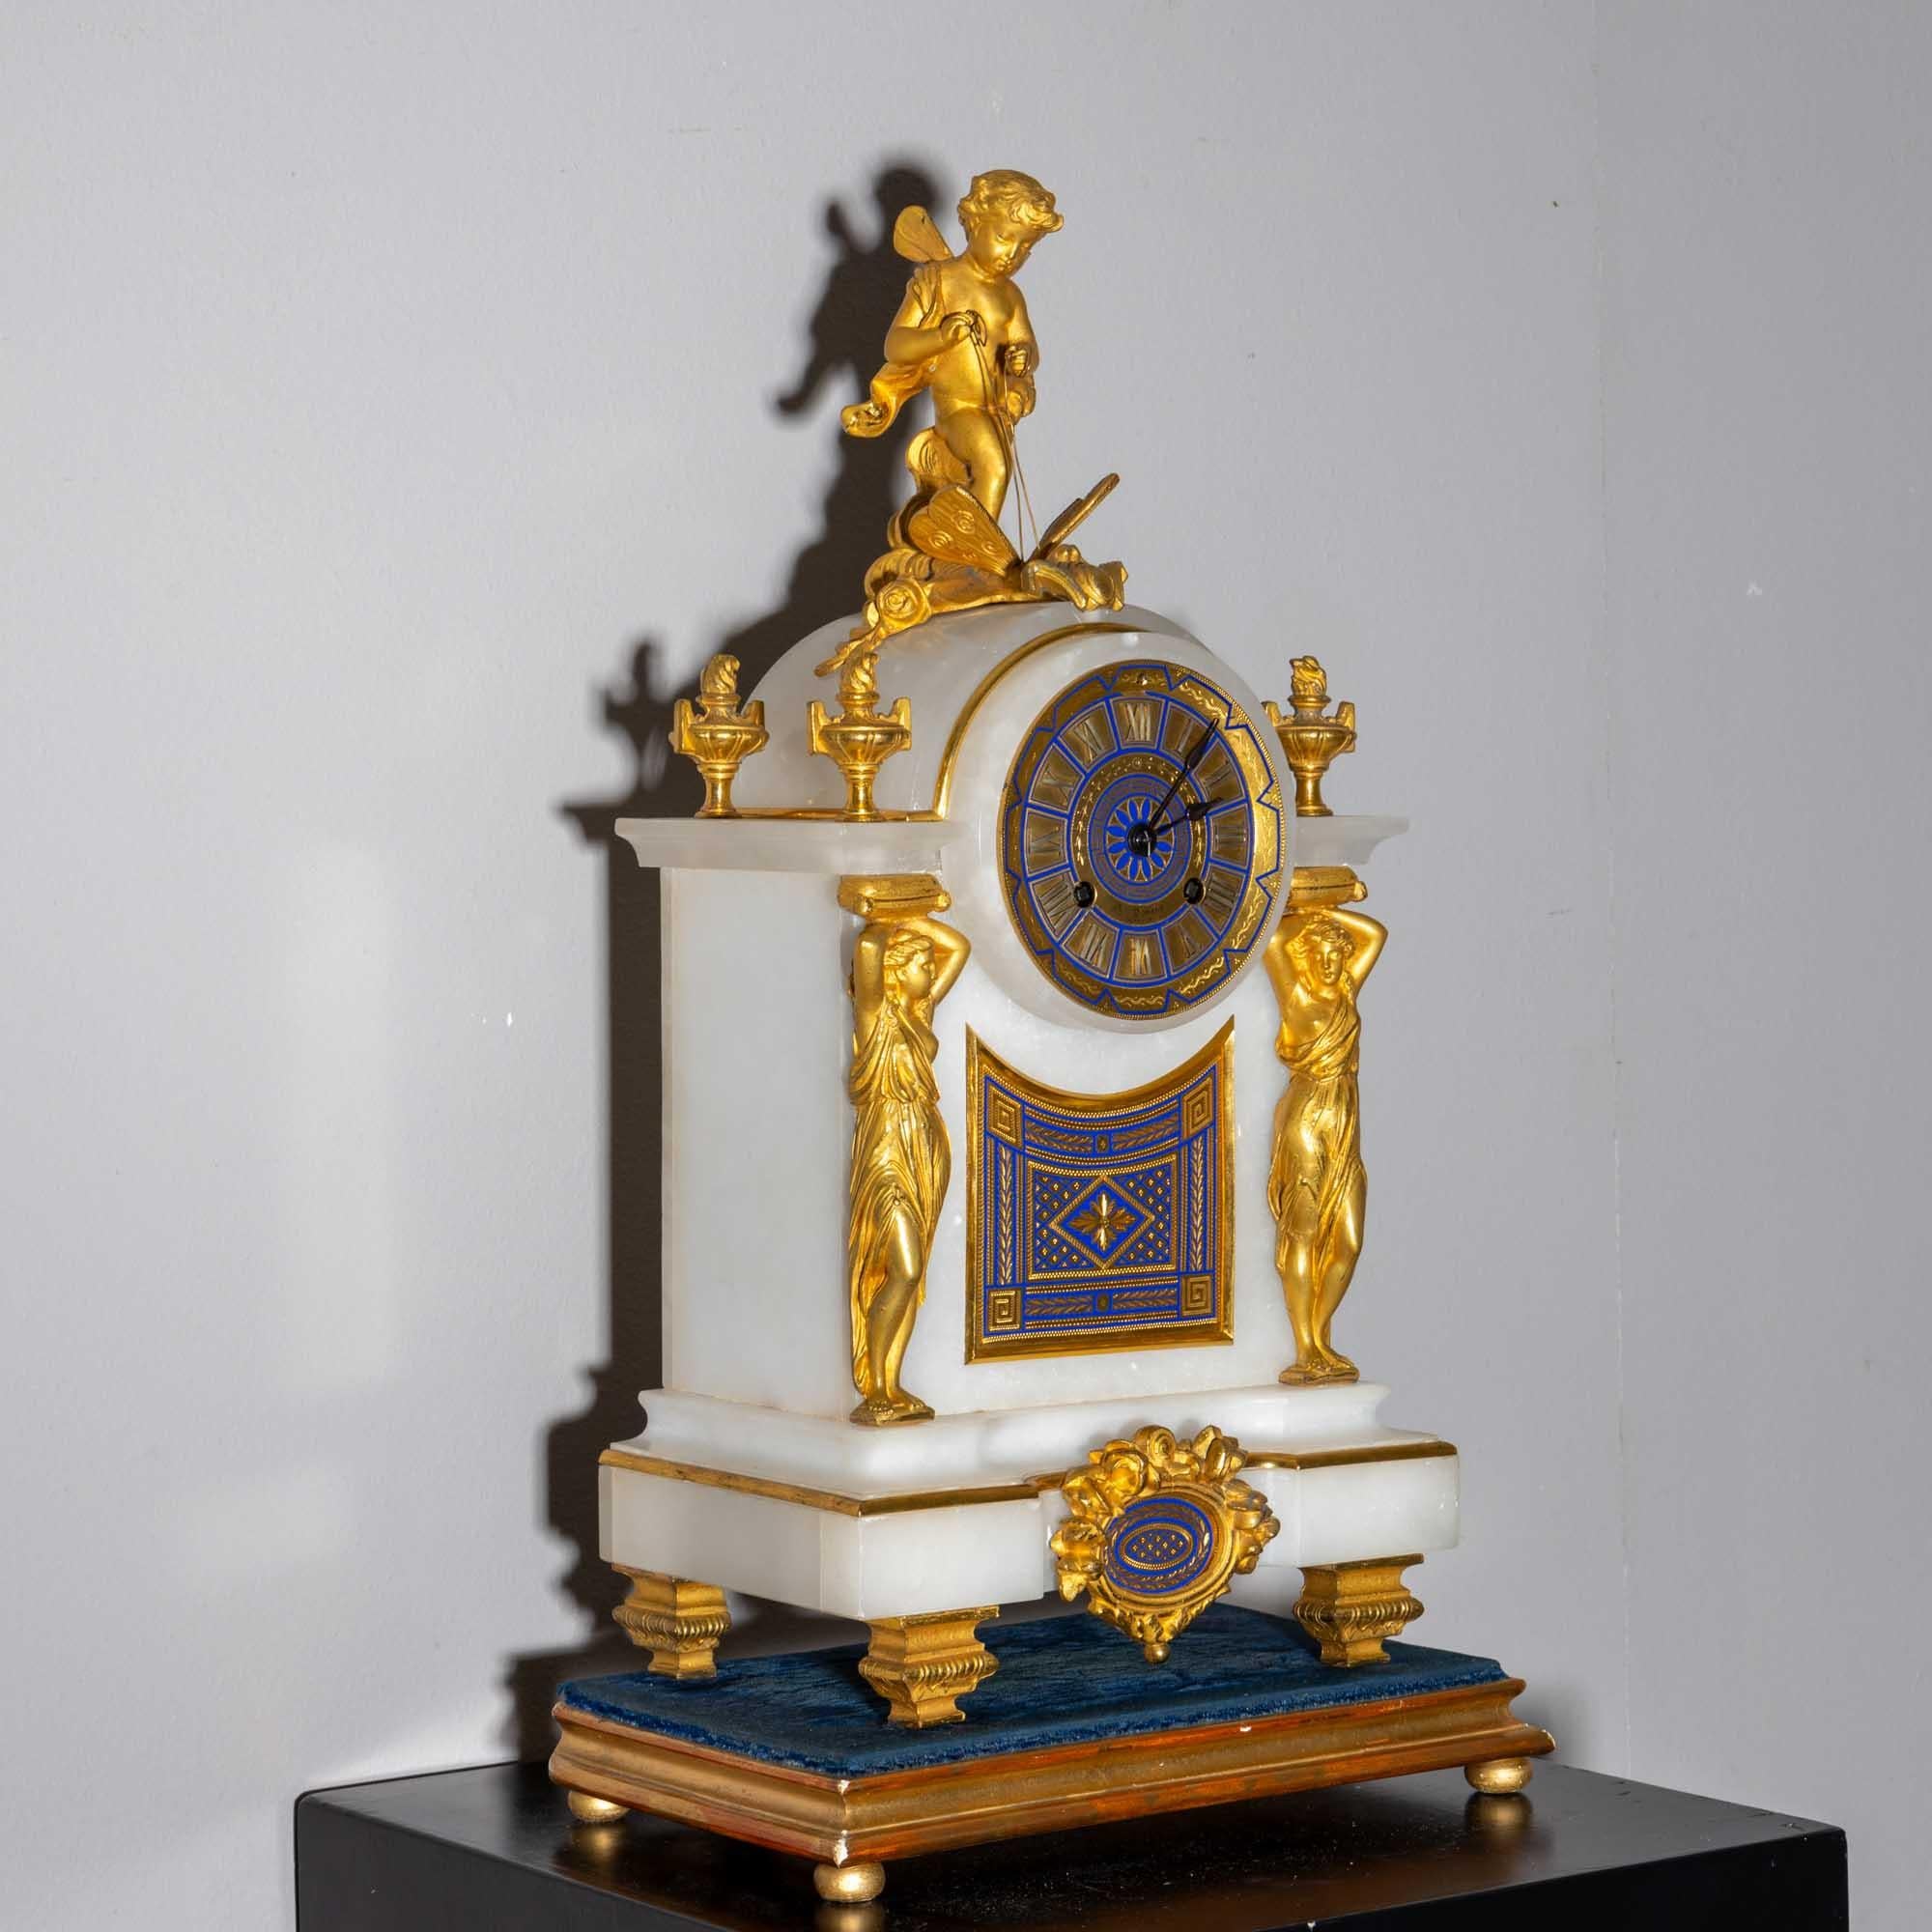 Pendule de cheminée dans un boîtier en albâtre à heures romaines, décor bleu de cobalt et doré en forme de cariatides, d'urnes enflammées et d'un putto ailé chevauchant un papillon. L'horloge est posée sur un piédestal recouvert de velours bleu.